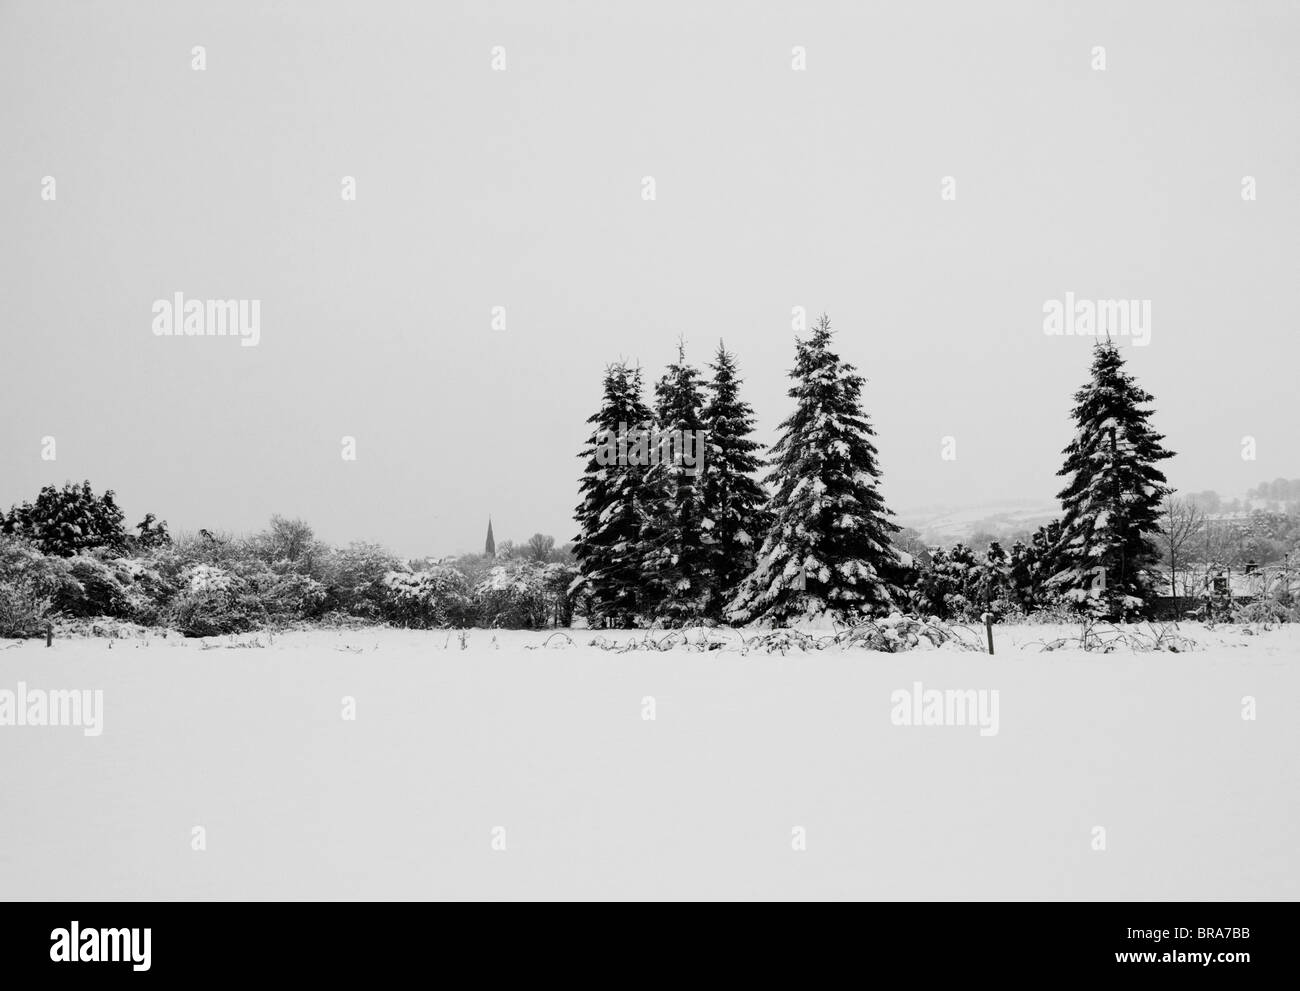 Schwarz / weiß Bild von Bäumen und entfernten Gebäuden im Schnee. Stockfoto